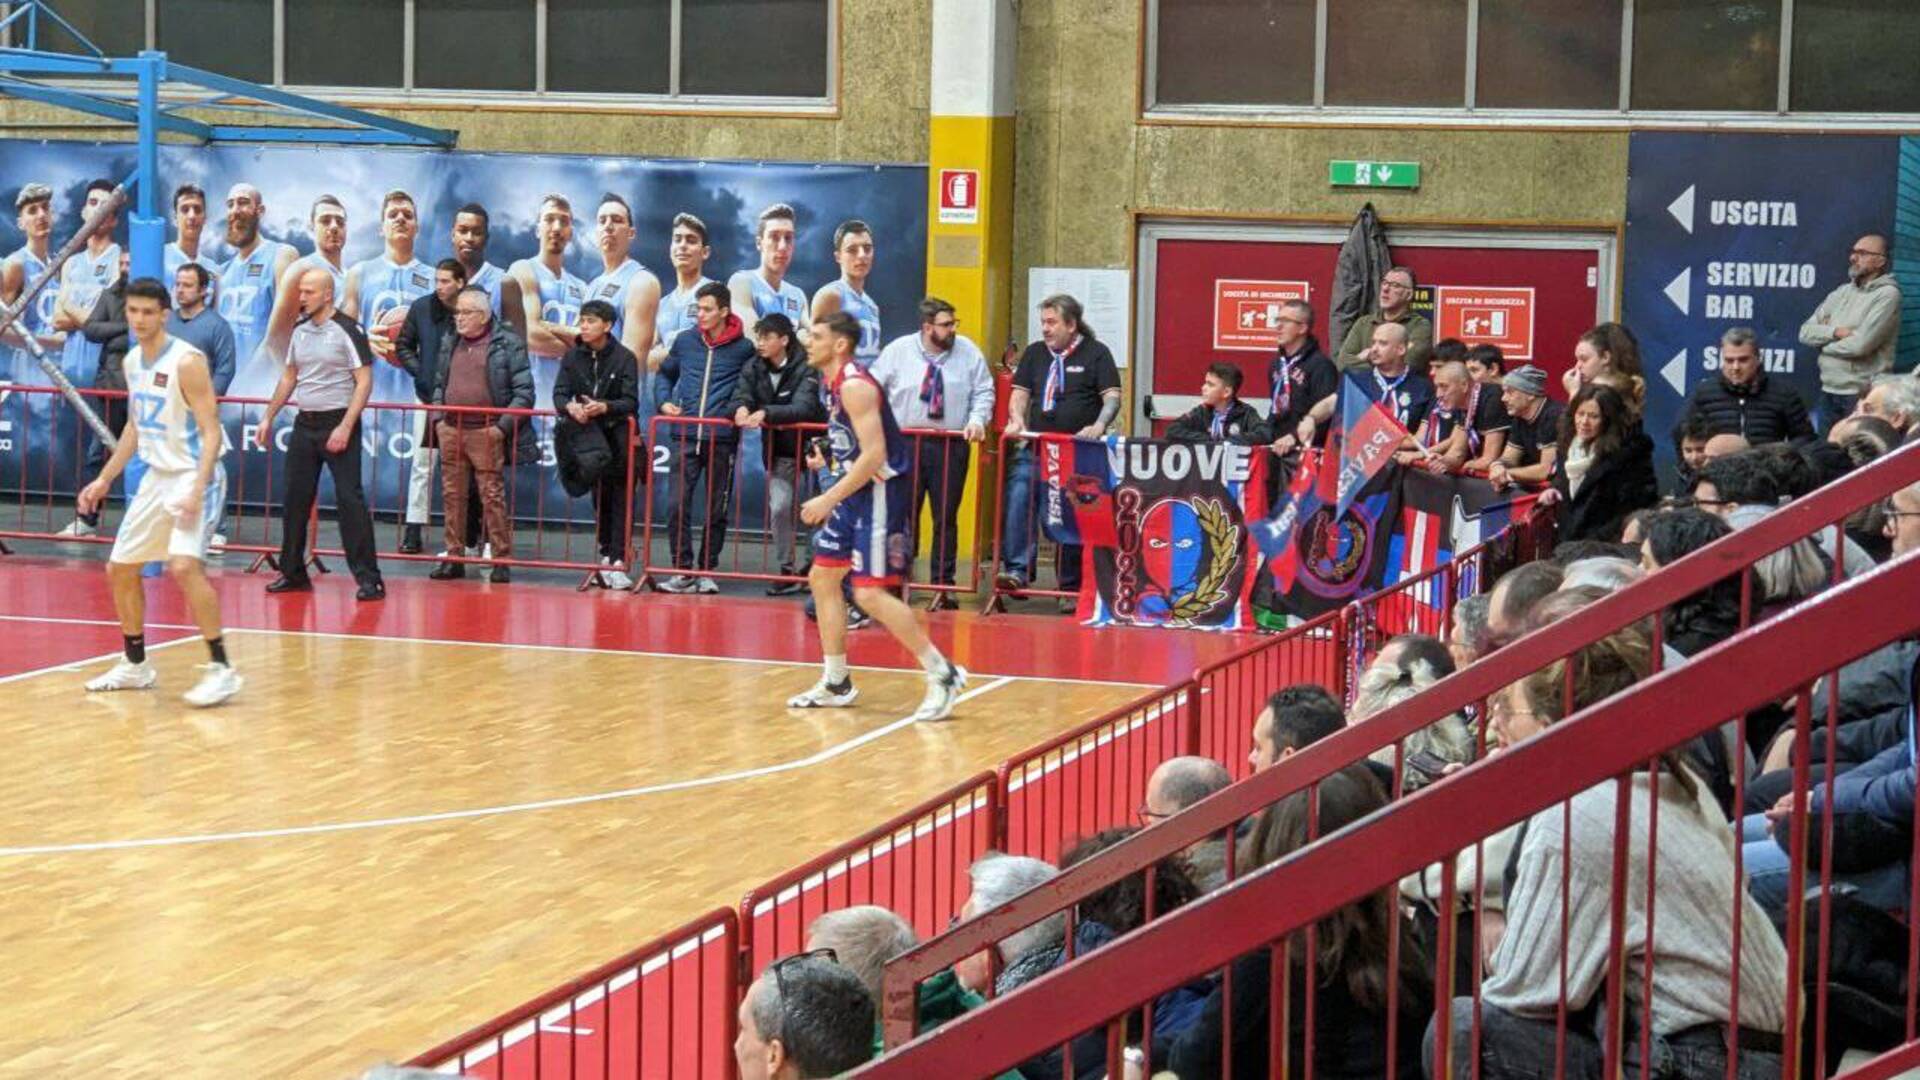 Basket semifinale serie B interregionale, ultra Pavia annunciano “Invadiamo Saronno con o senza biglietto”